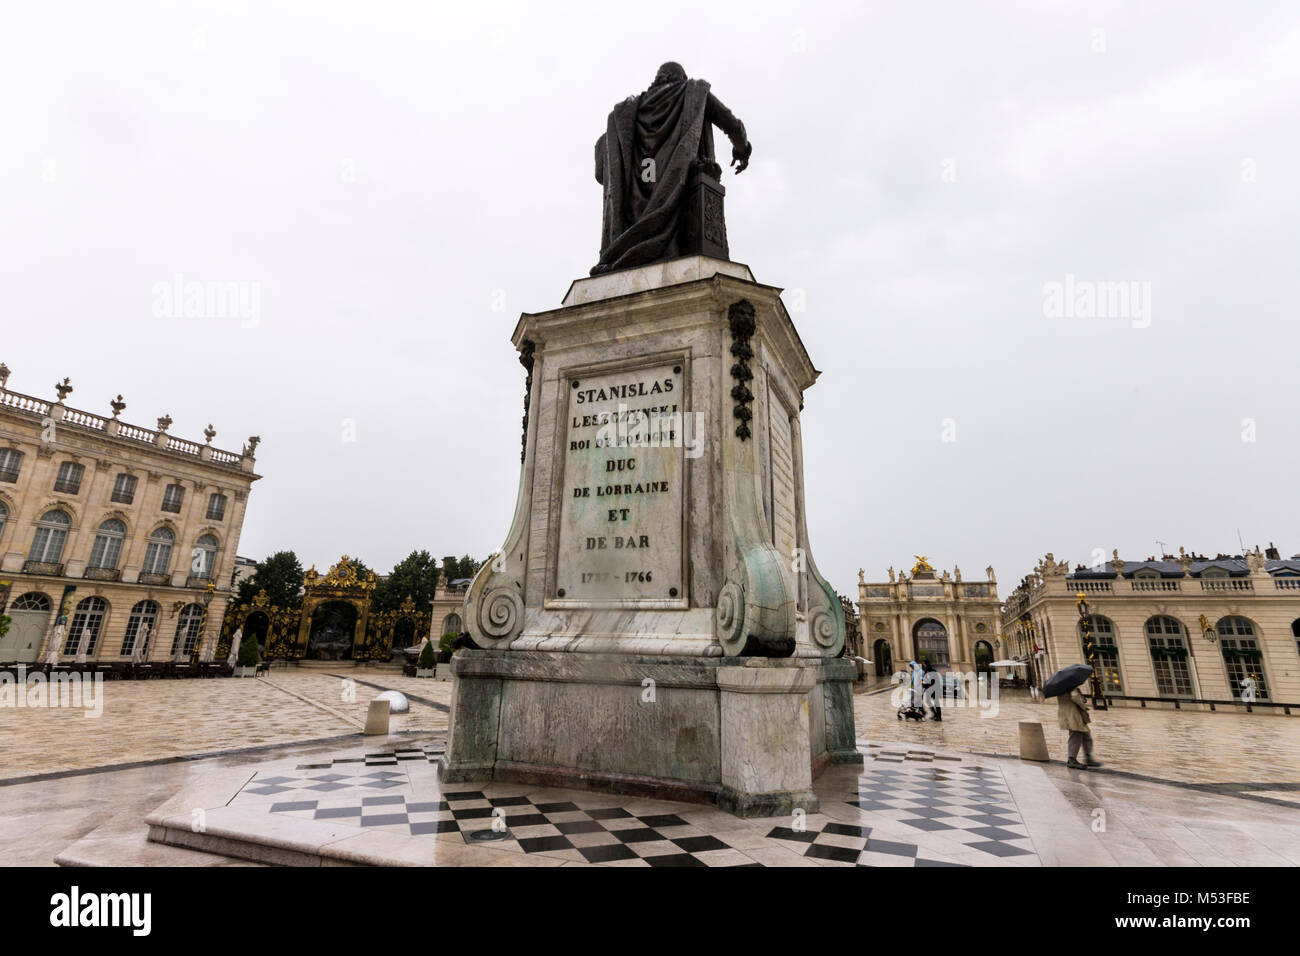 Estatua de bronce de Stanislaw Leszczynski en la Plaza Stanislas de Nancy, Francia. Un sitio de Herencia Mundial desde 1983 Foto de stock